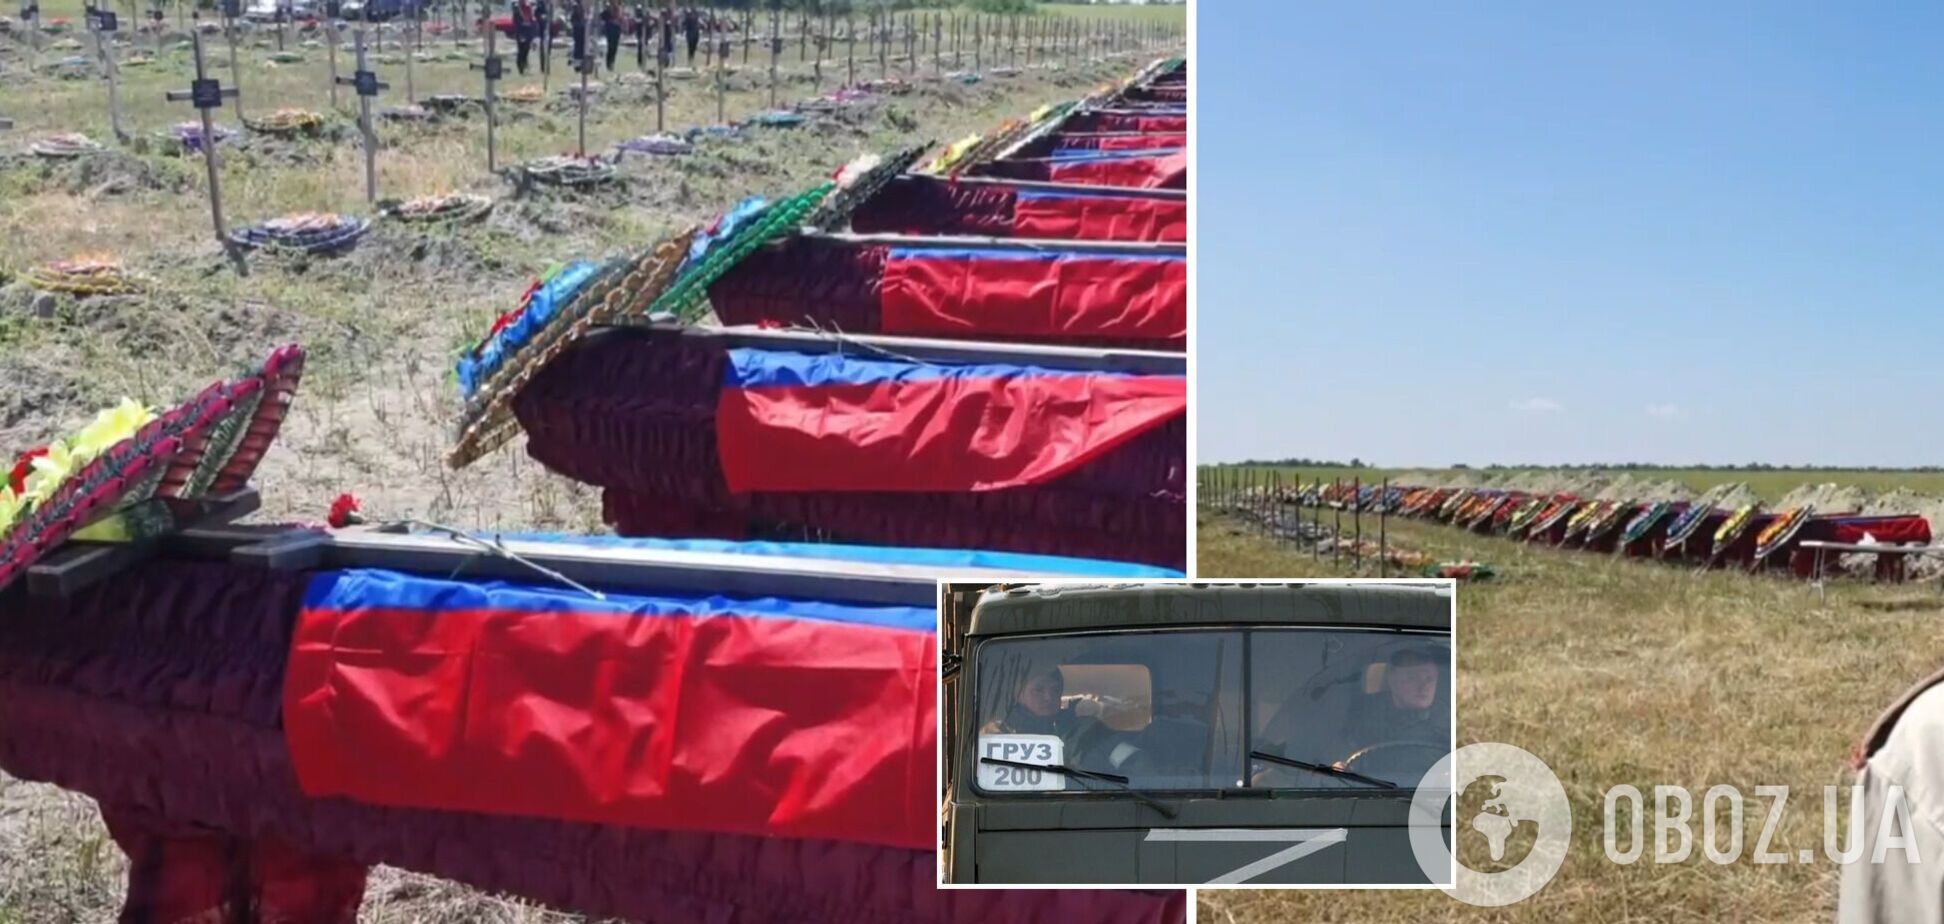 'Потерь нет': в Луганске похоронили 58 оккупантов, ликвидированных при захвате Рубежного и Северодонецка. Видео